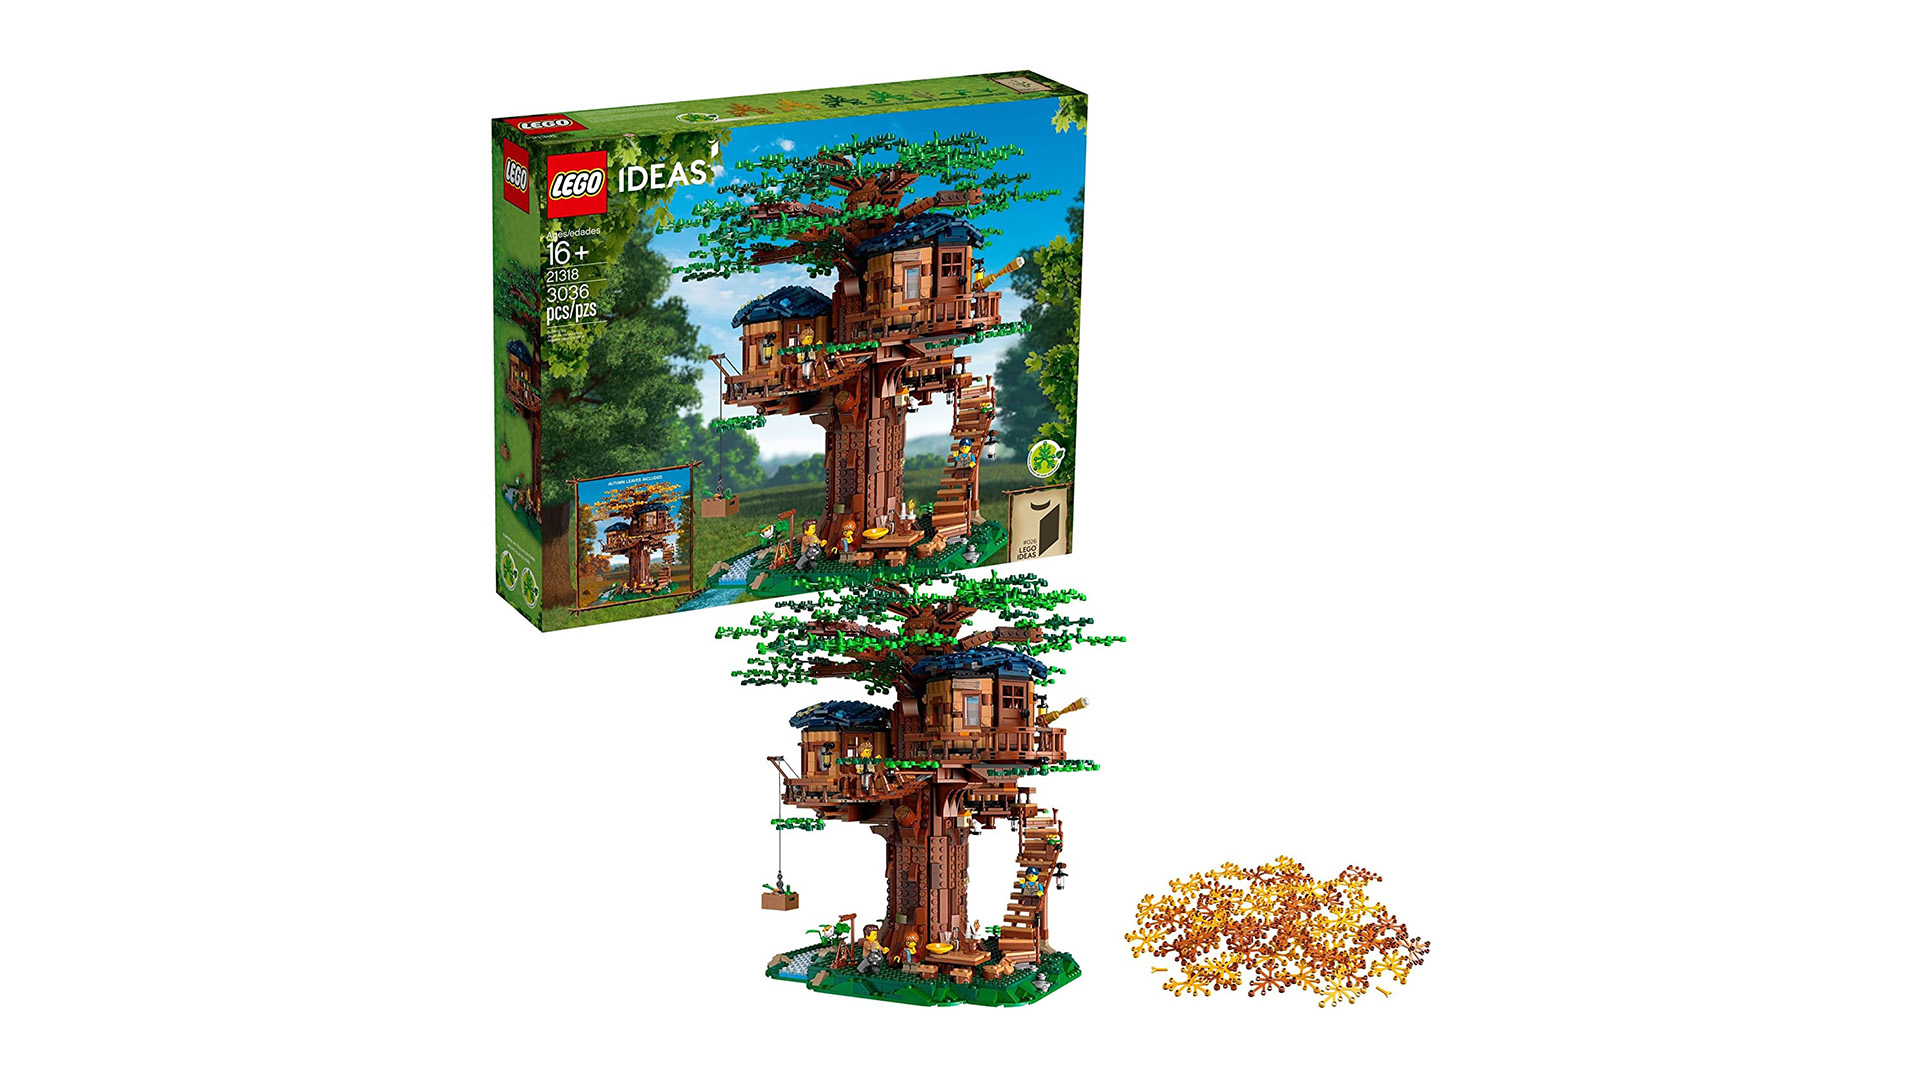 Lego Ideas Tree House and box